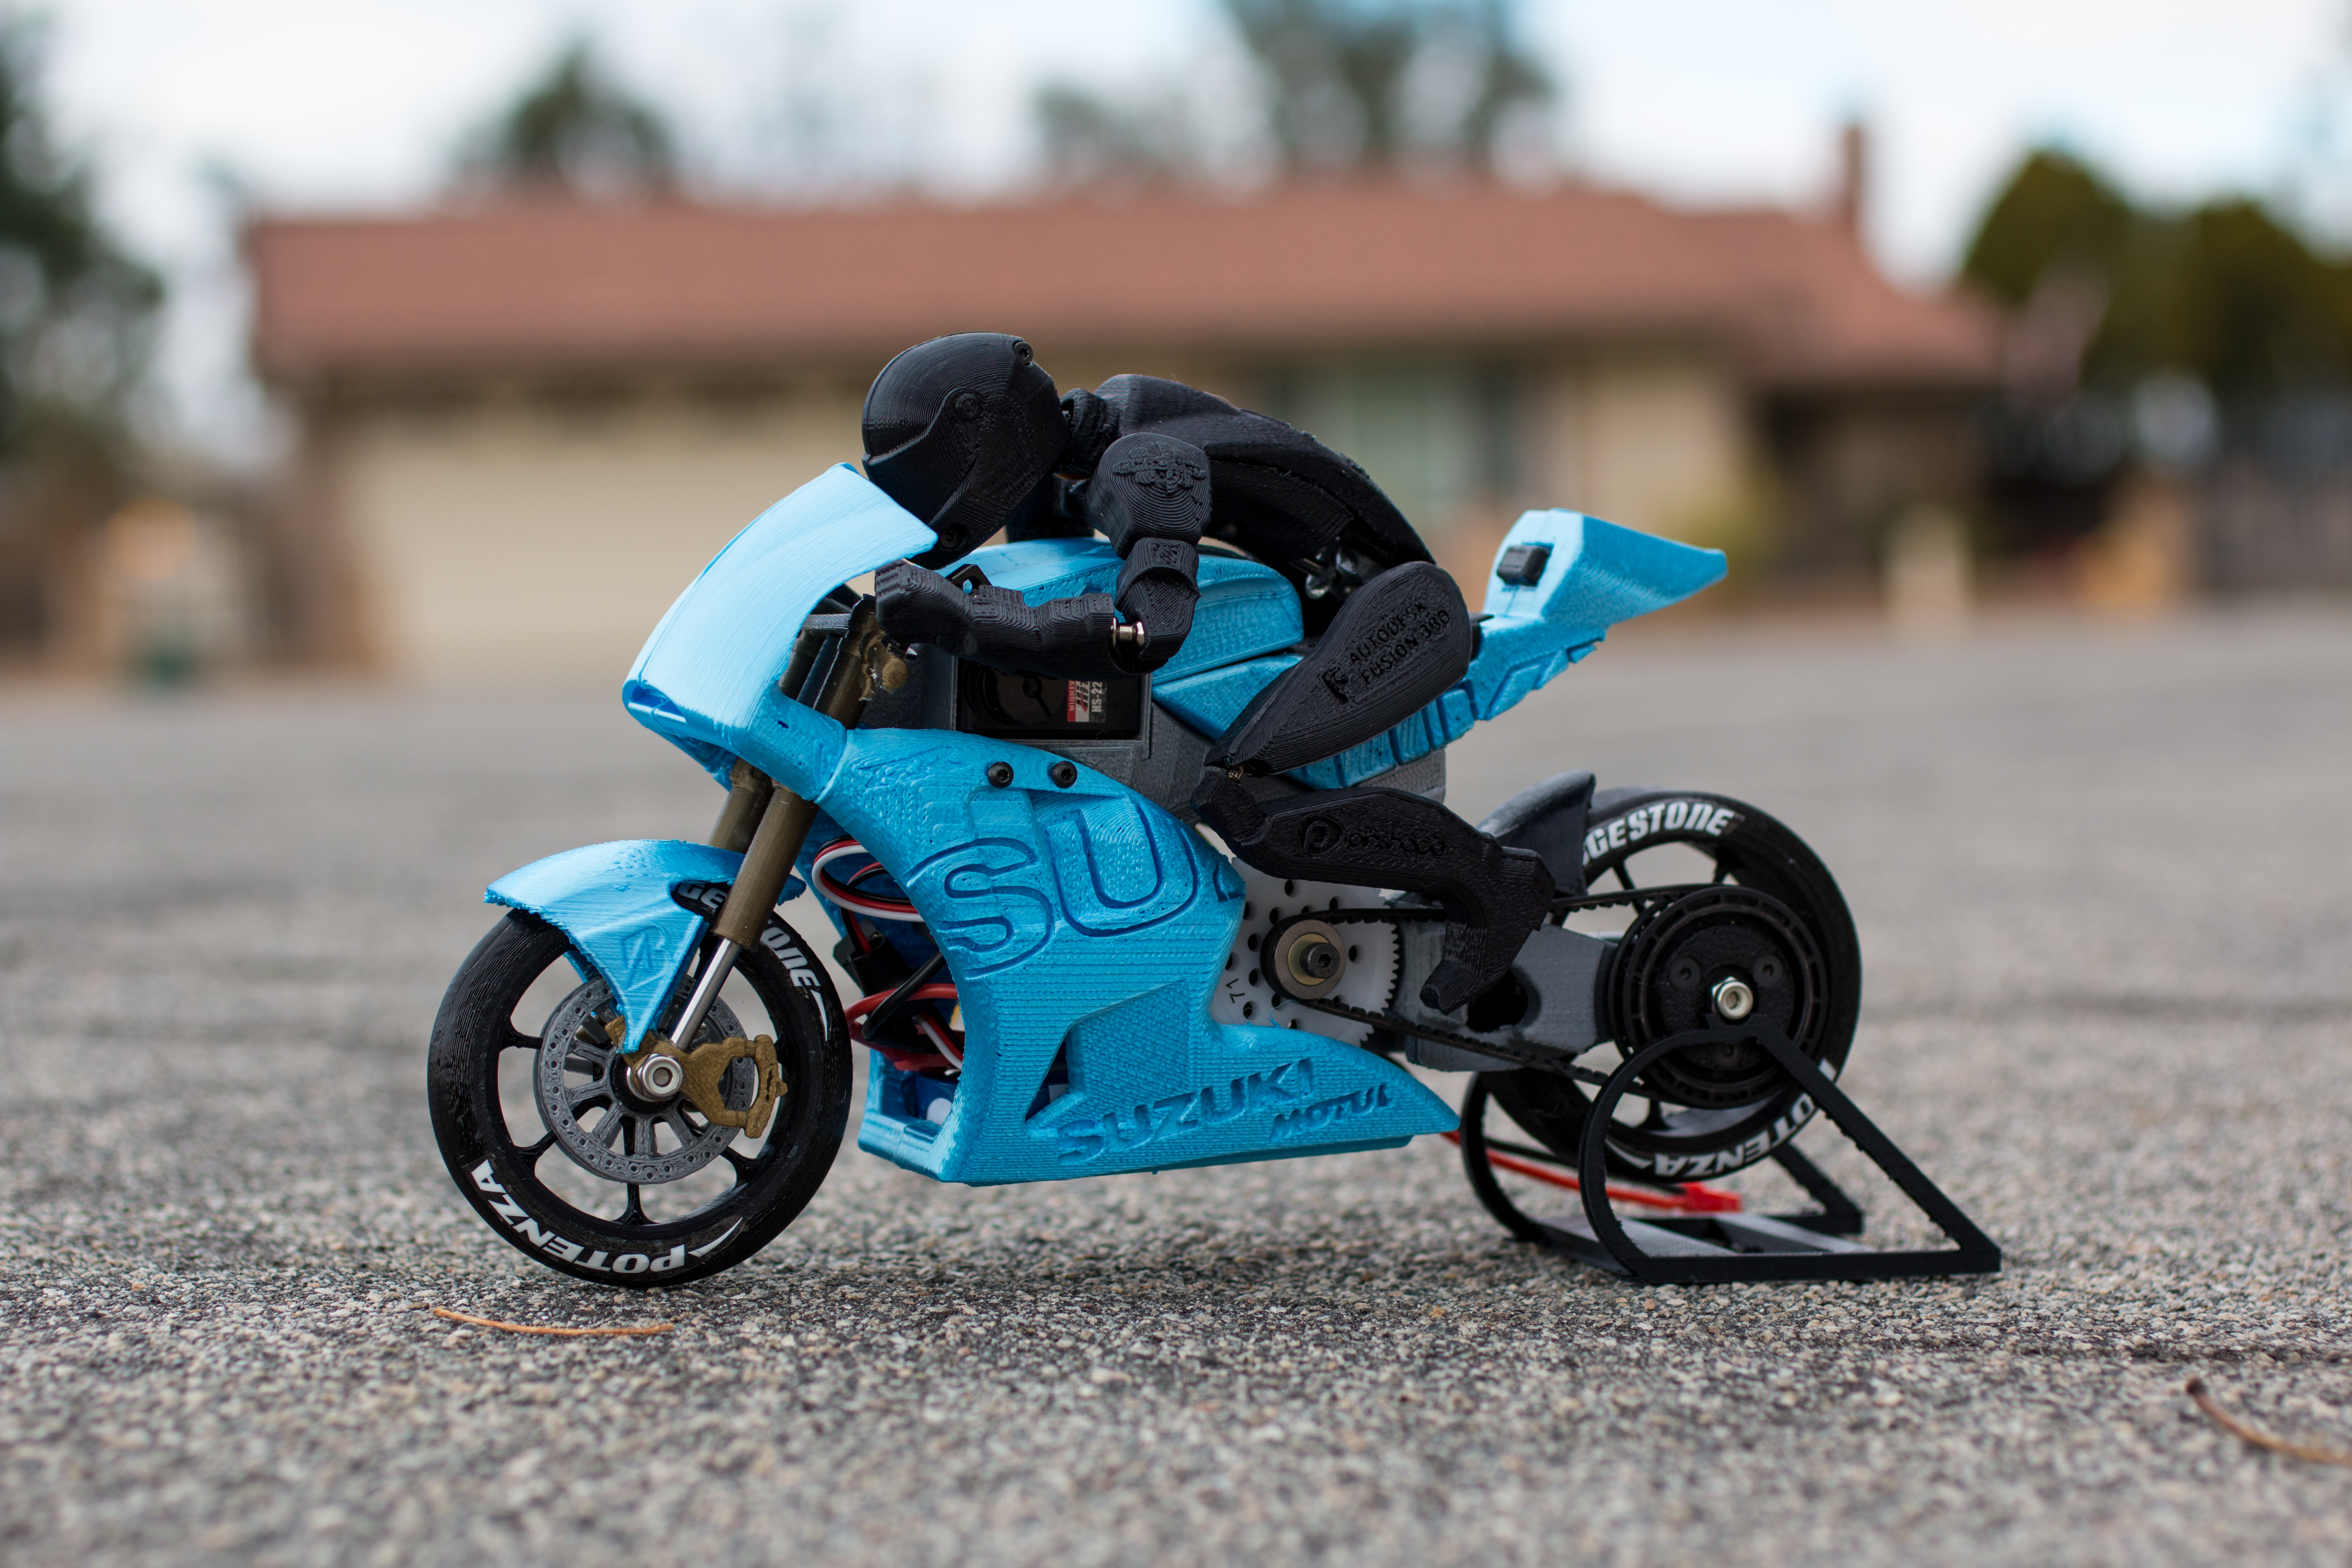 2016 Suzuki GSX-RR MotoGP RC Motorcycle